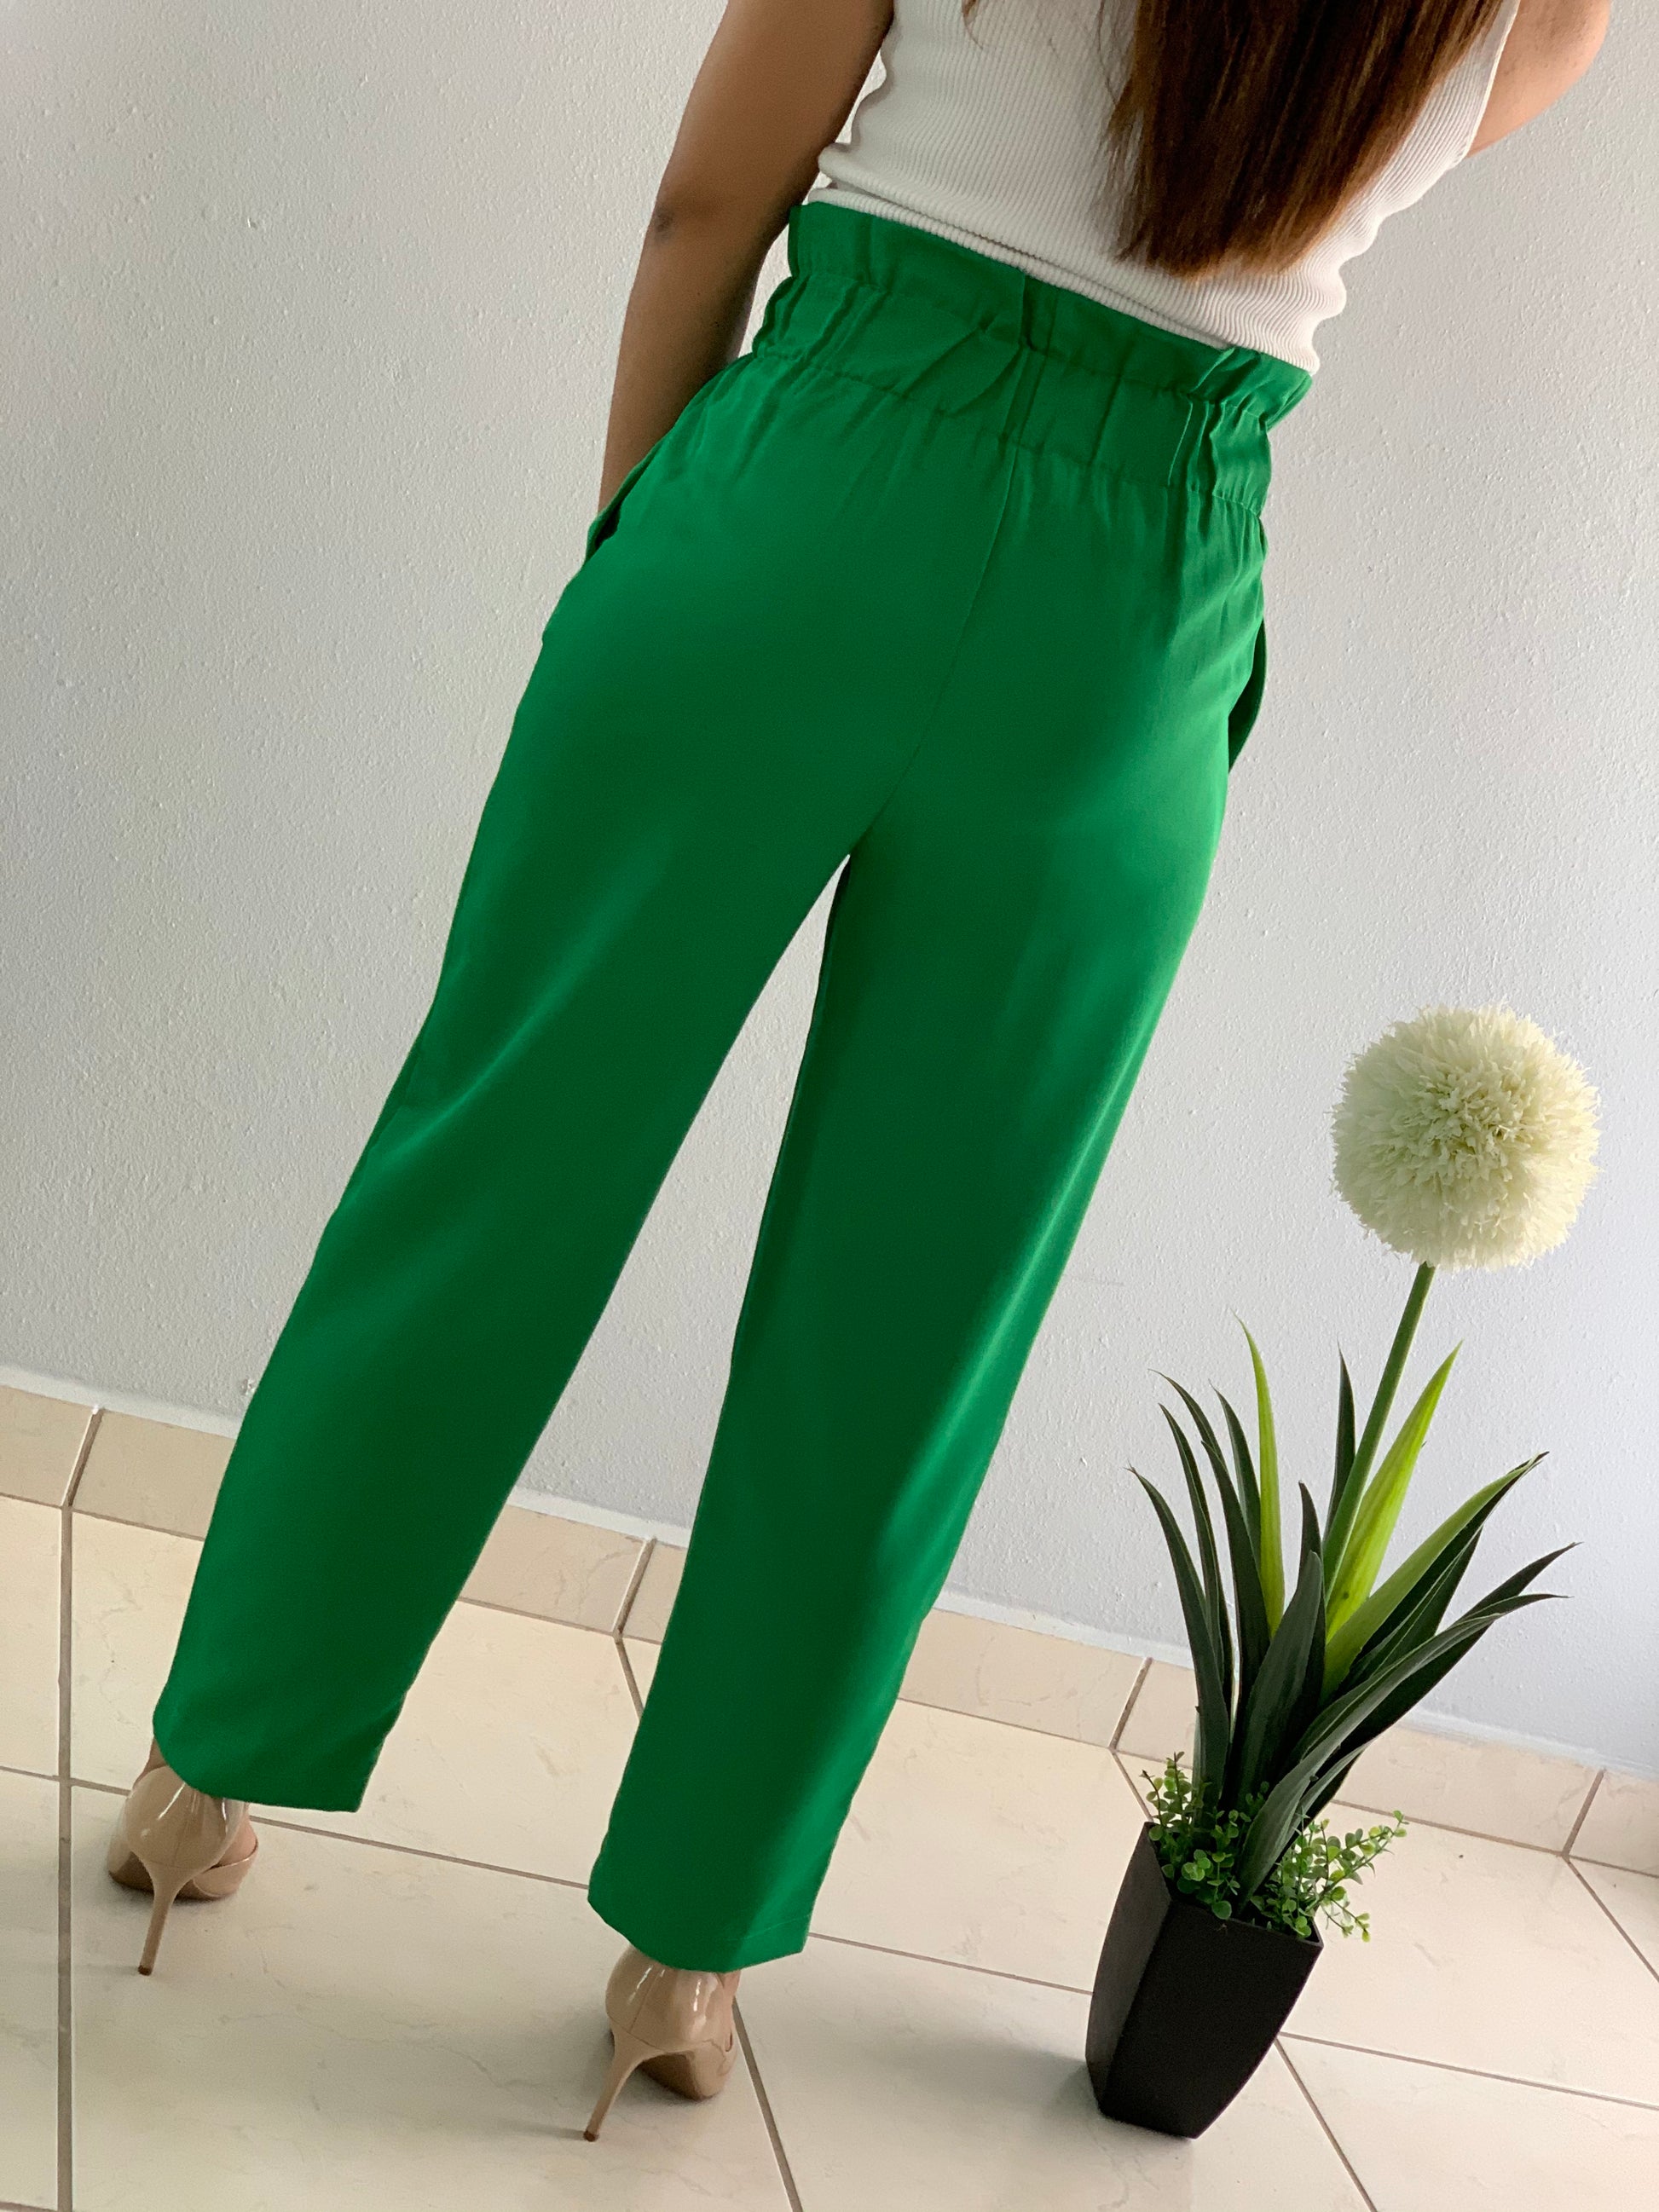 Sage Green Pants - Cropped Cargo Pants - Utilitarian Fashion - Lulus